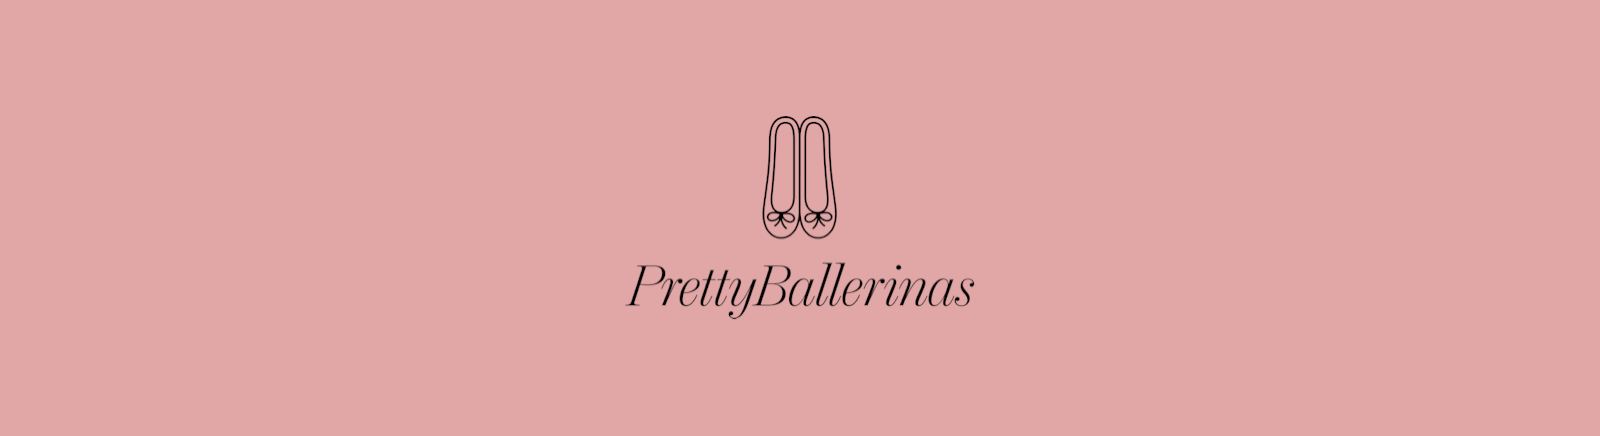 Pretty Ballerinas Mokassins für Damen im Online-Shop von GISY kaufen